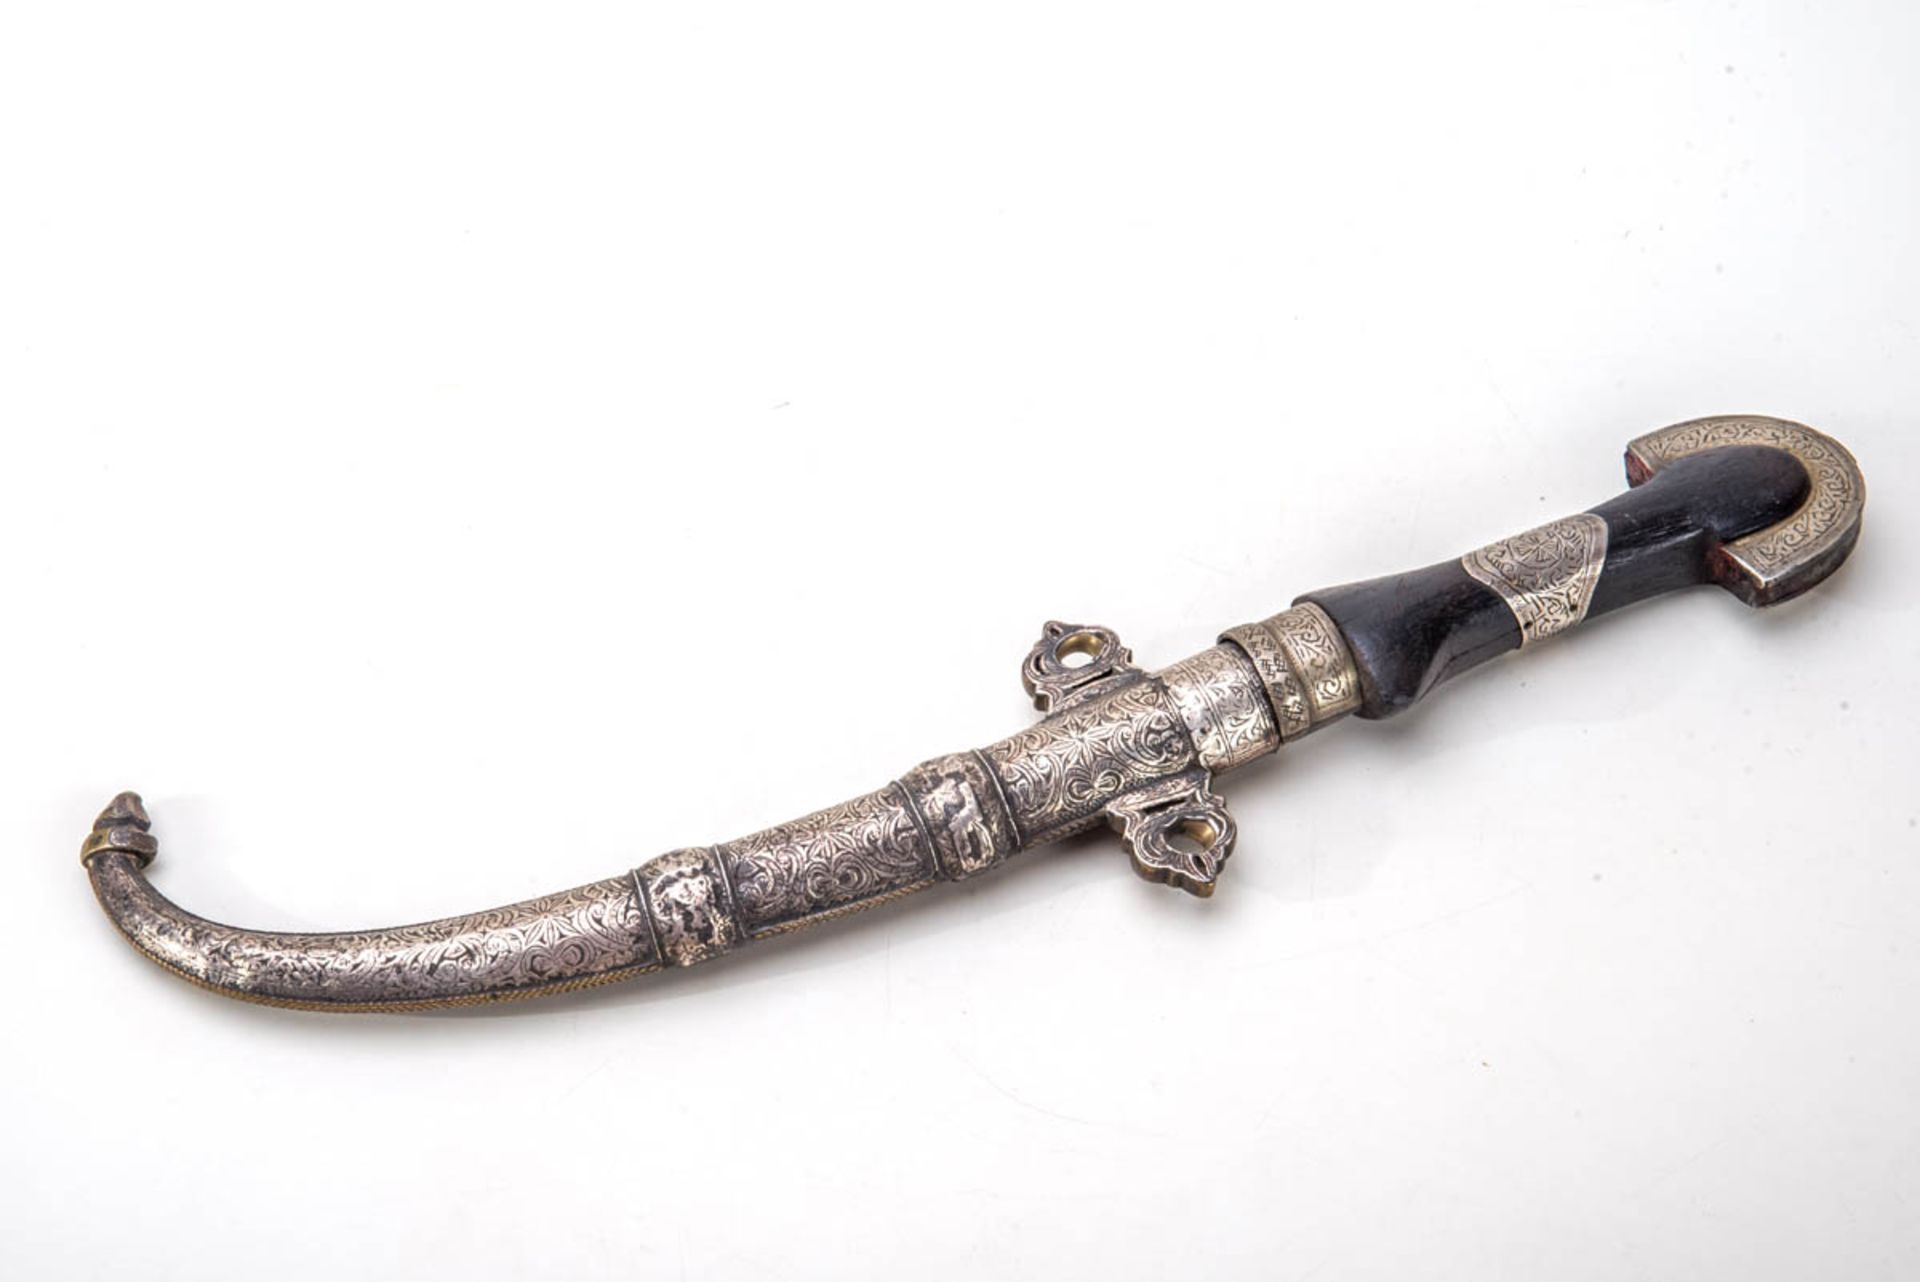 Krummdolch, Vorderer Orient.Scheide aus Silber auf Messing, Griff Holz. L.: 44 cm.